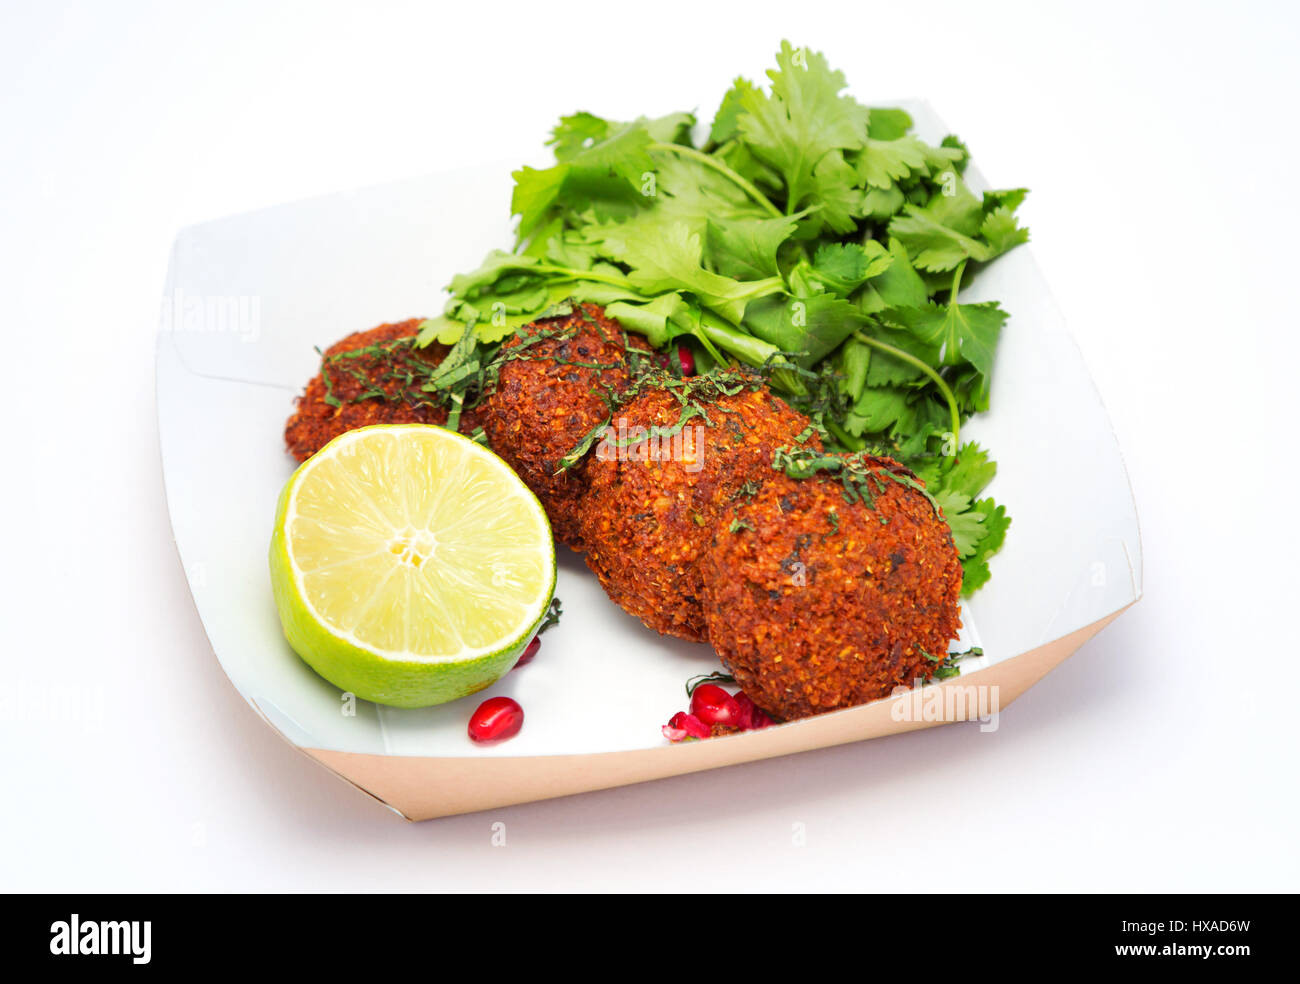 Orientalische Speisen - vegetarisch mit Falafel, Limette und Koriander, UK - Konzept - gesunde Ernährung Stockfoto